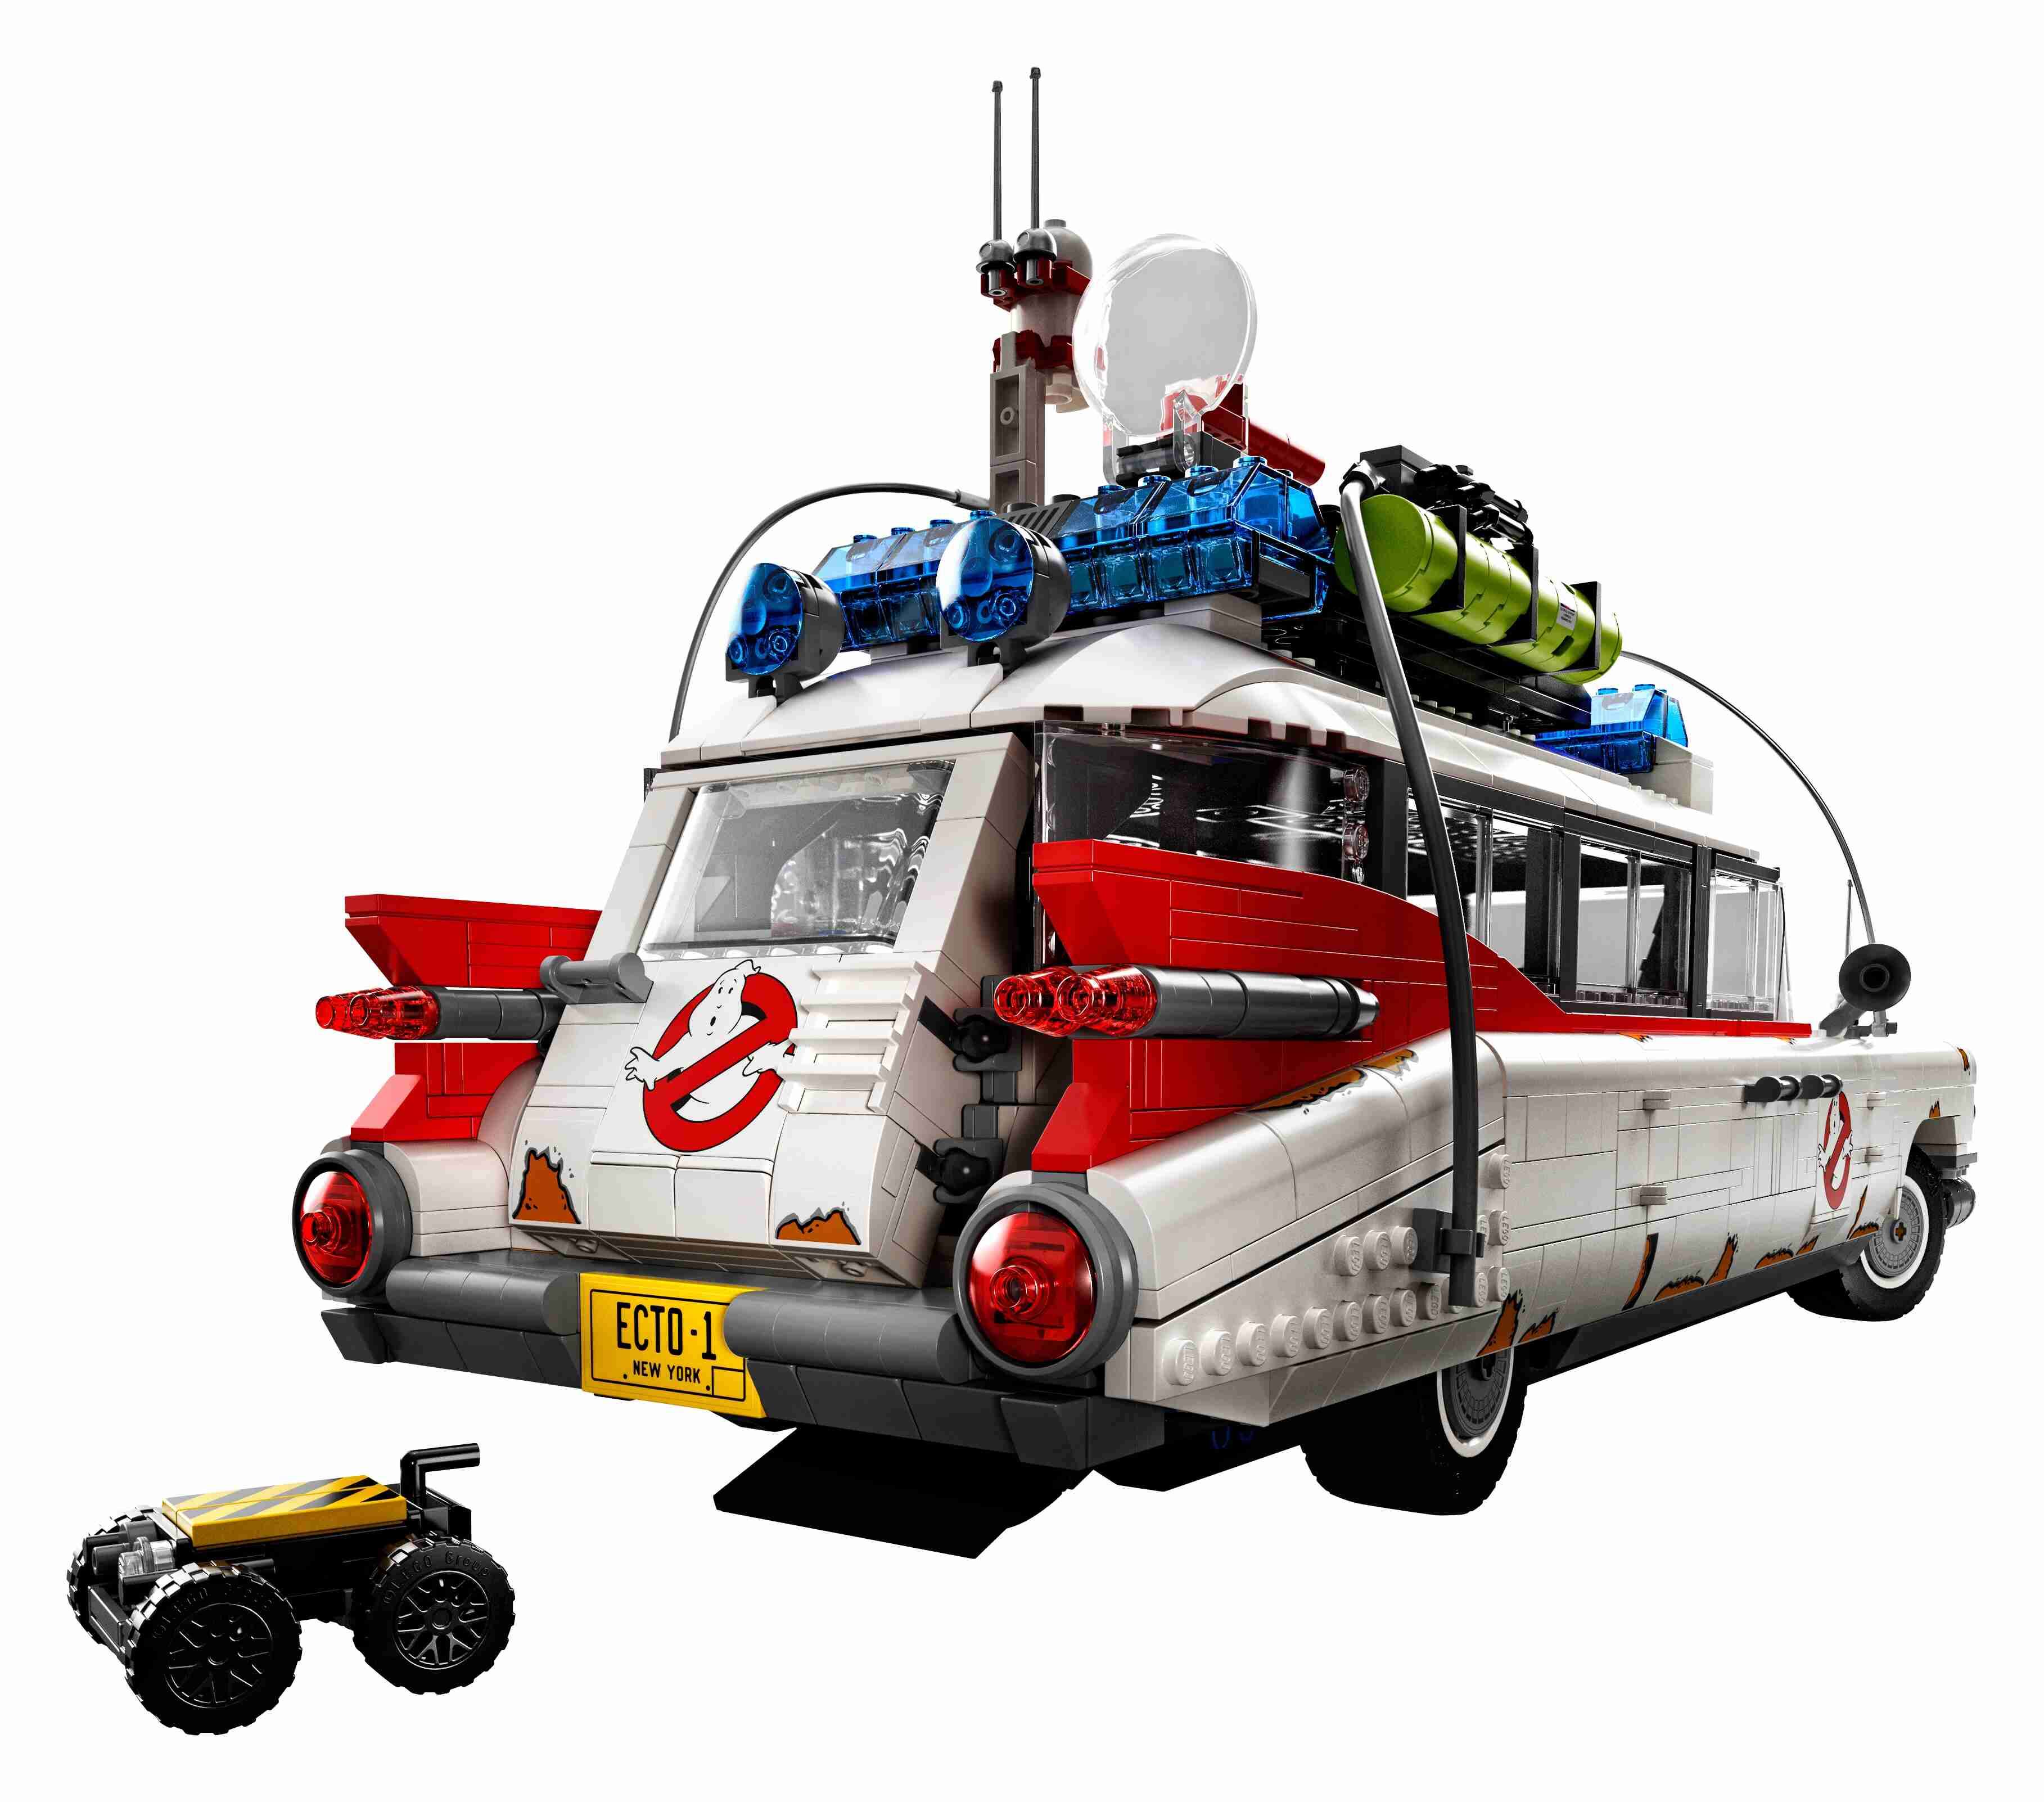 LEGO 10274 ICONS Ghostbusters ECTO-1, für Erwachsene, Ausstellungsstück Sammler